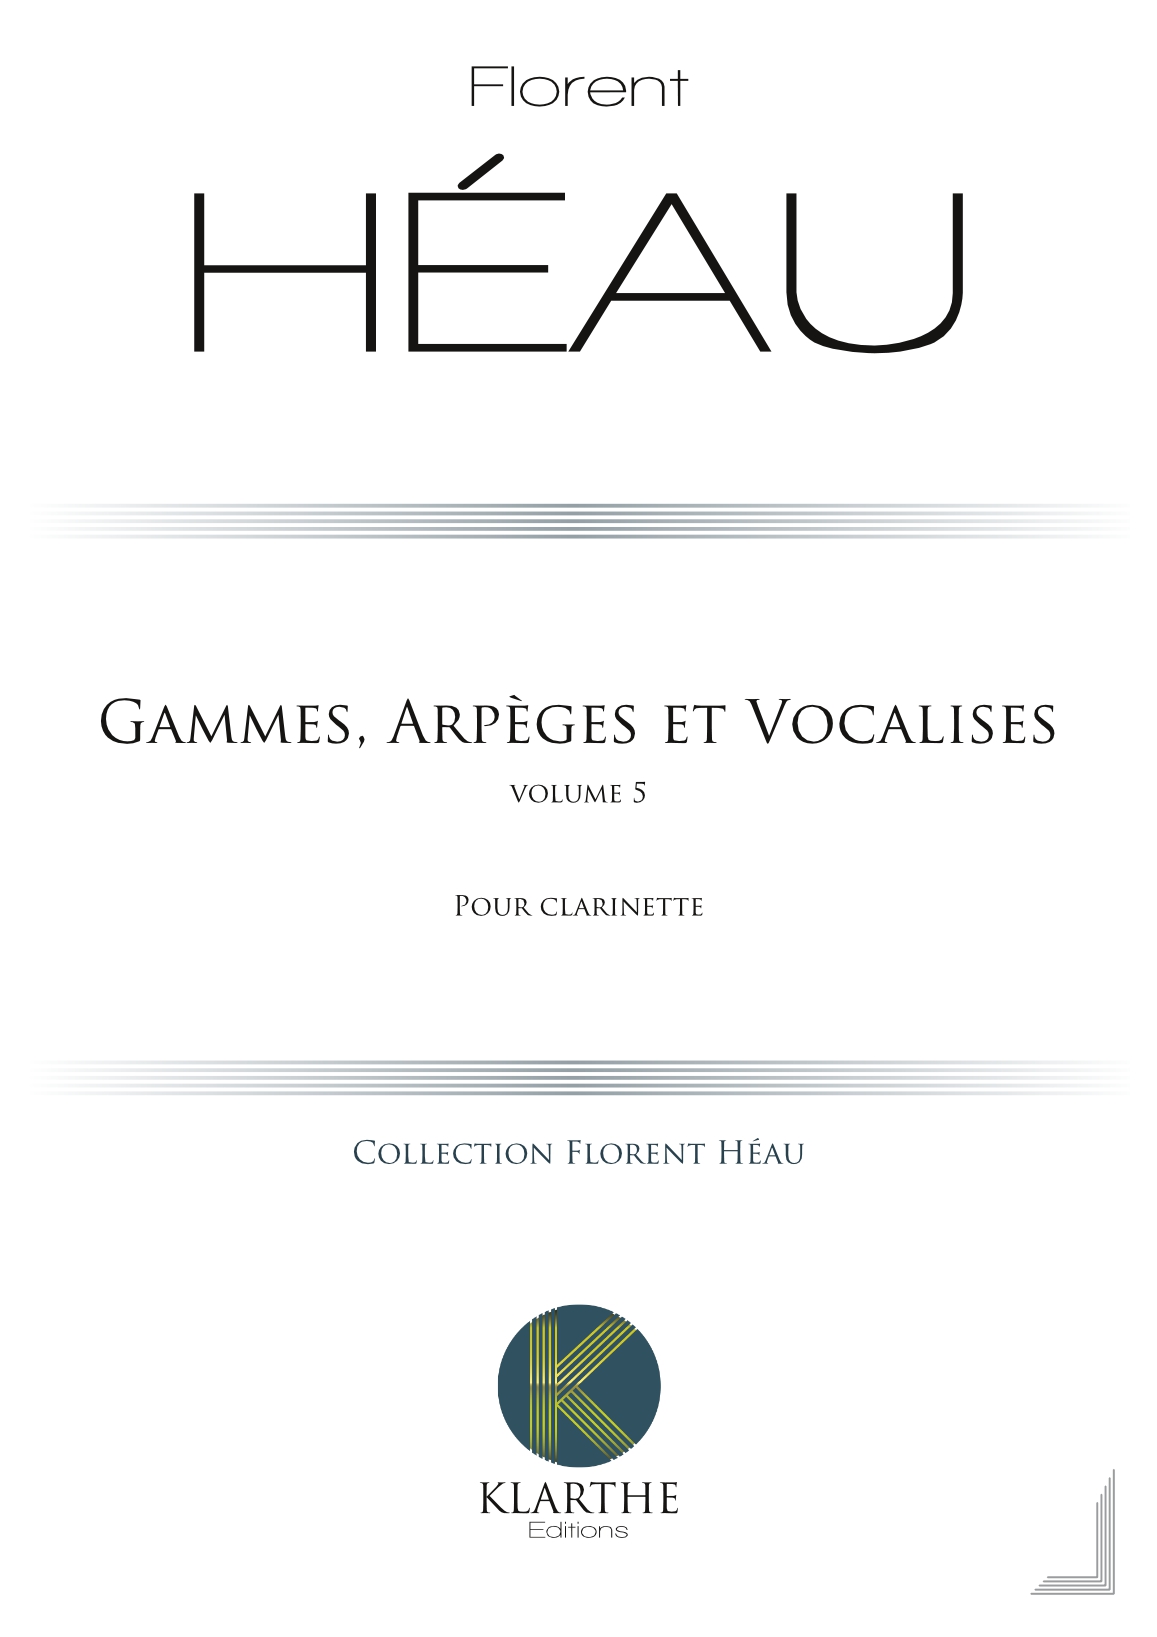 Gammes, Arpges et Vocalises Vol 5 (HEAU FLORENT)